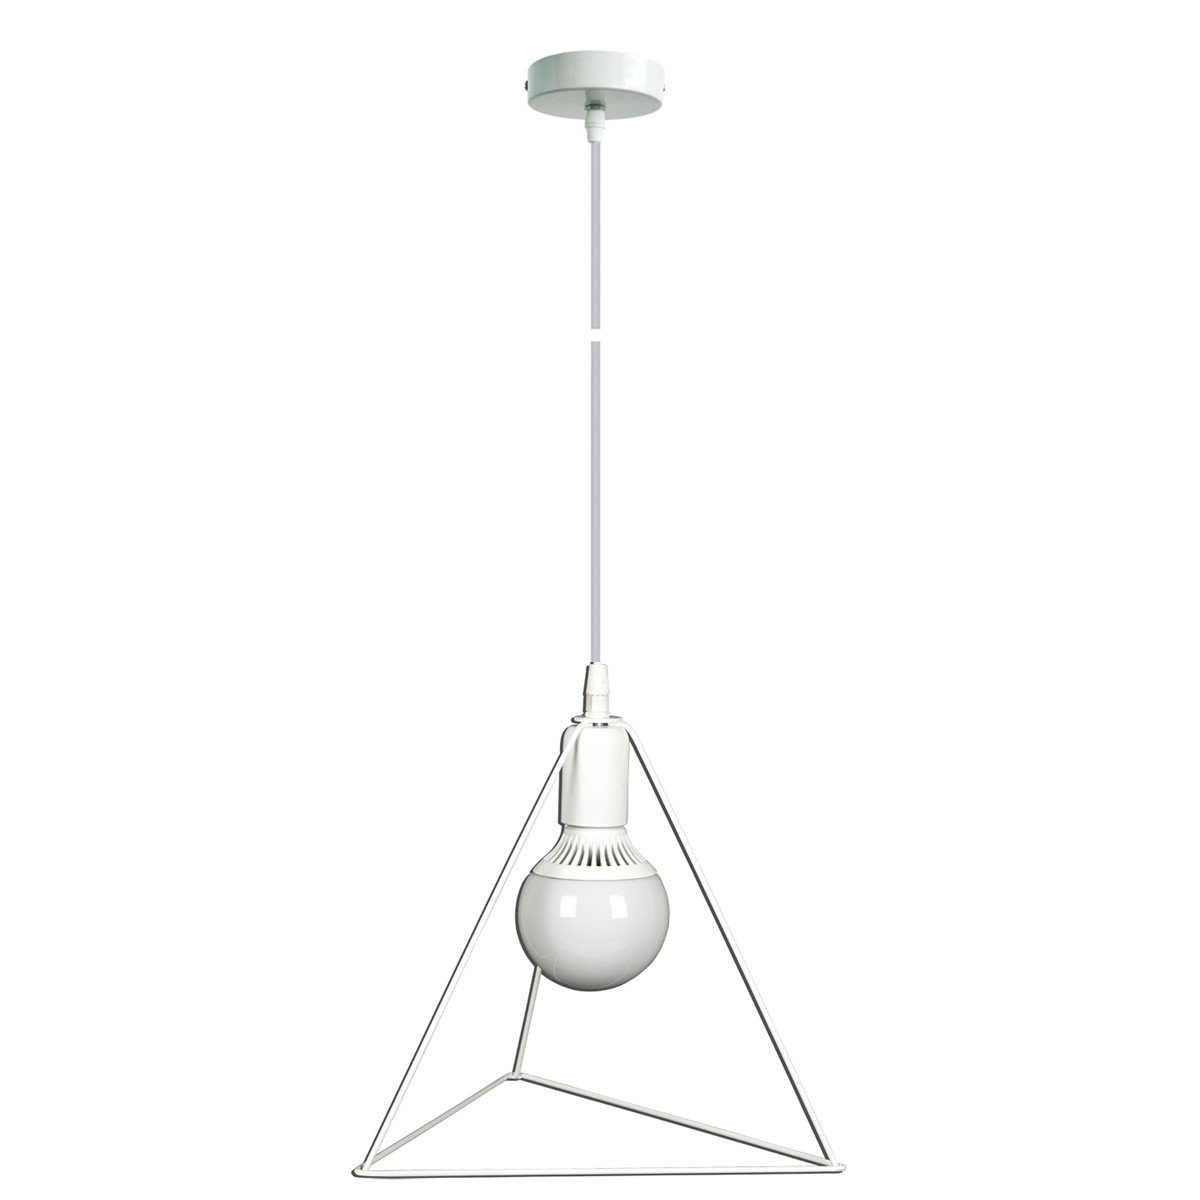 Φωτιστικό Κρεμαστό Κλουβί Τρίγωνο 30x30x30cm Από Μέταλλο Σε Λευκό Χρώμα       VK/0310/W